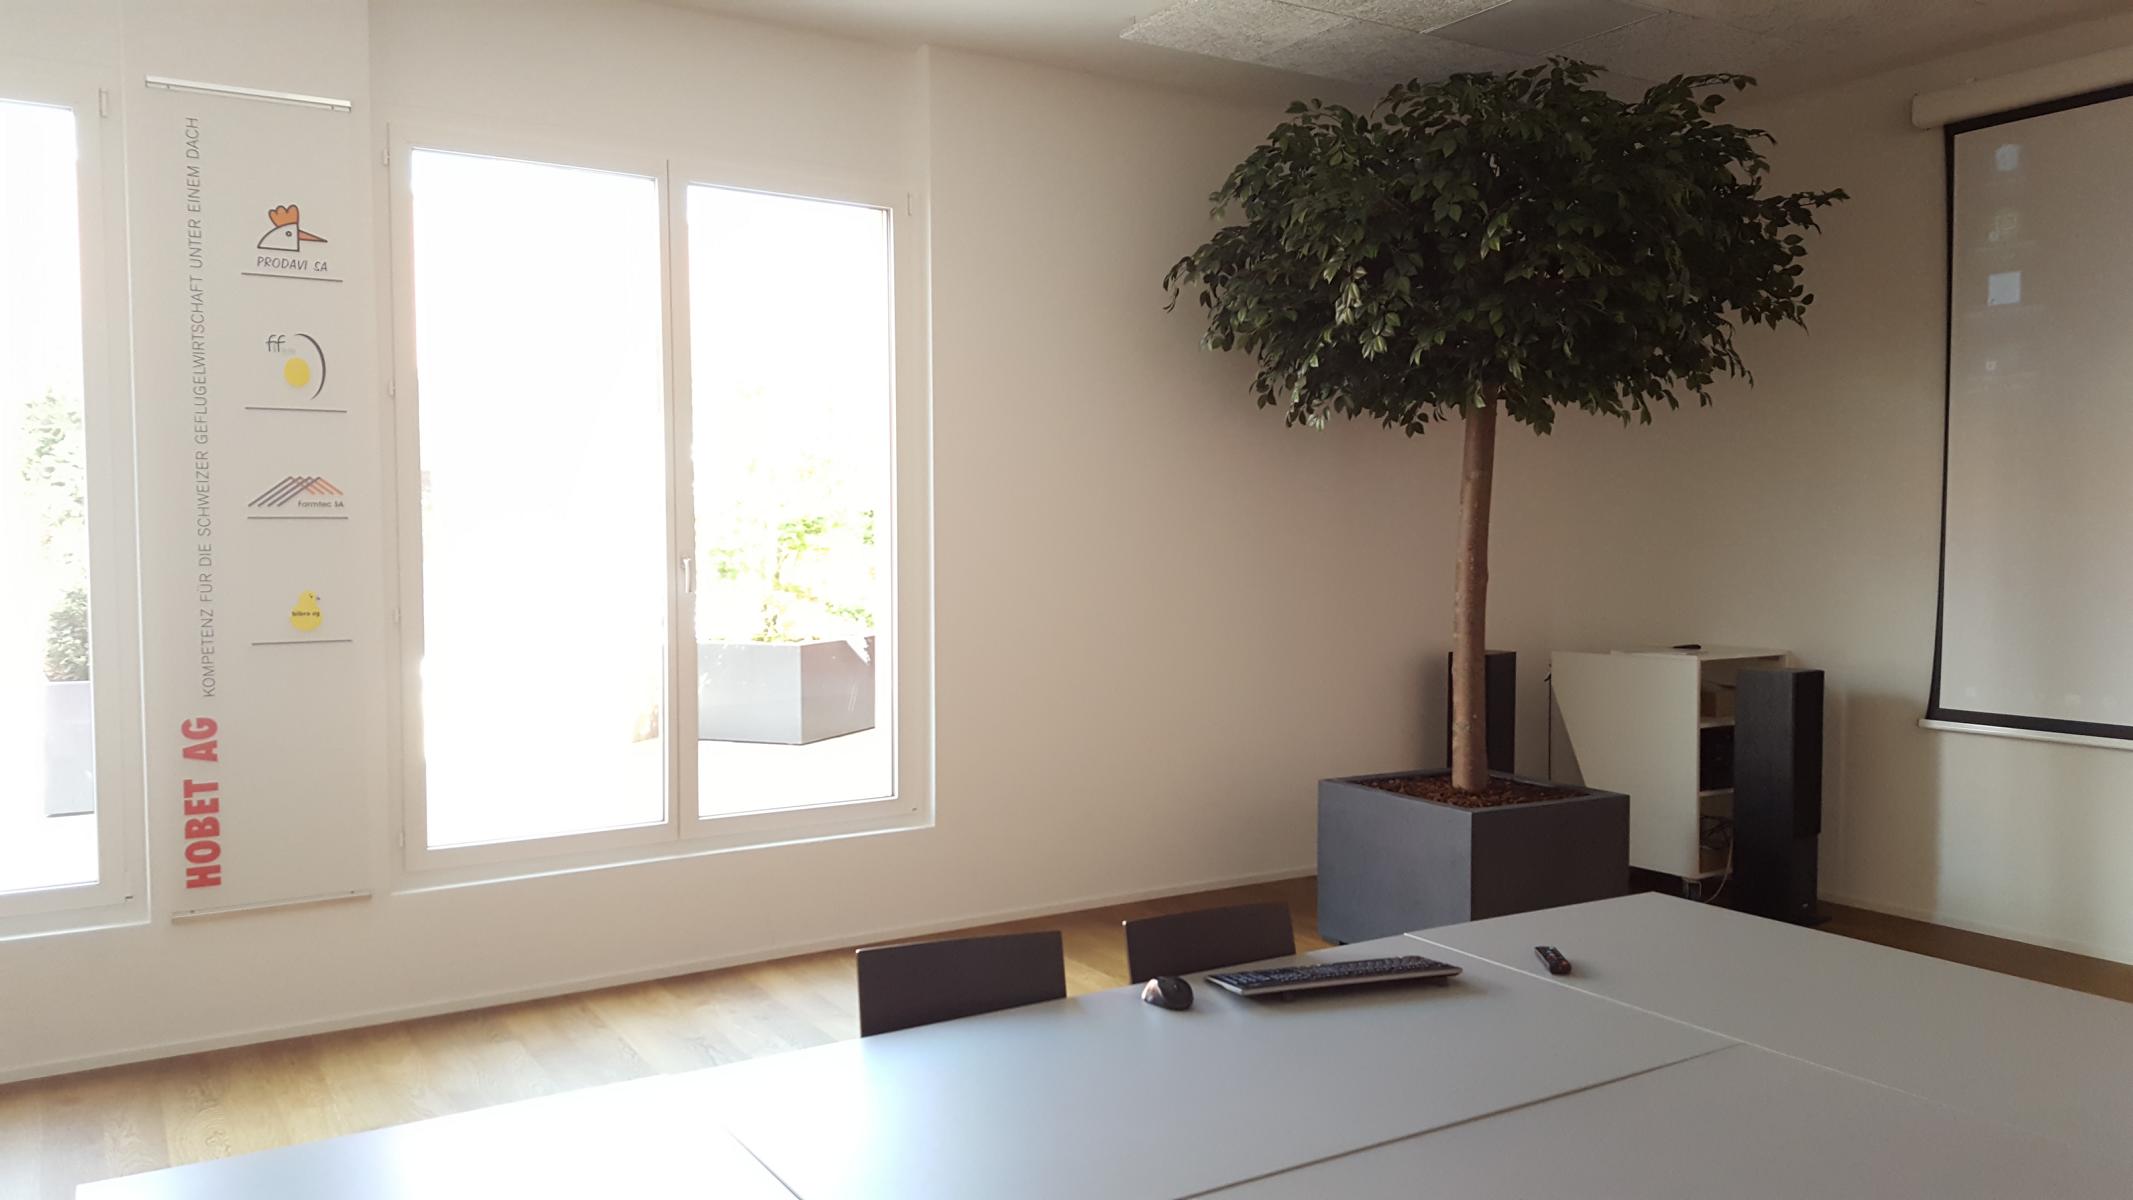 Grosser Apfelbaum Kunstbaum in einem Büro als Begrünung Innen.